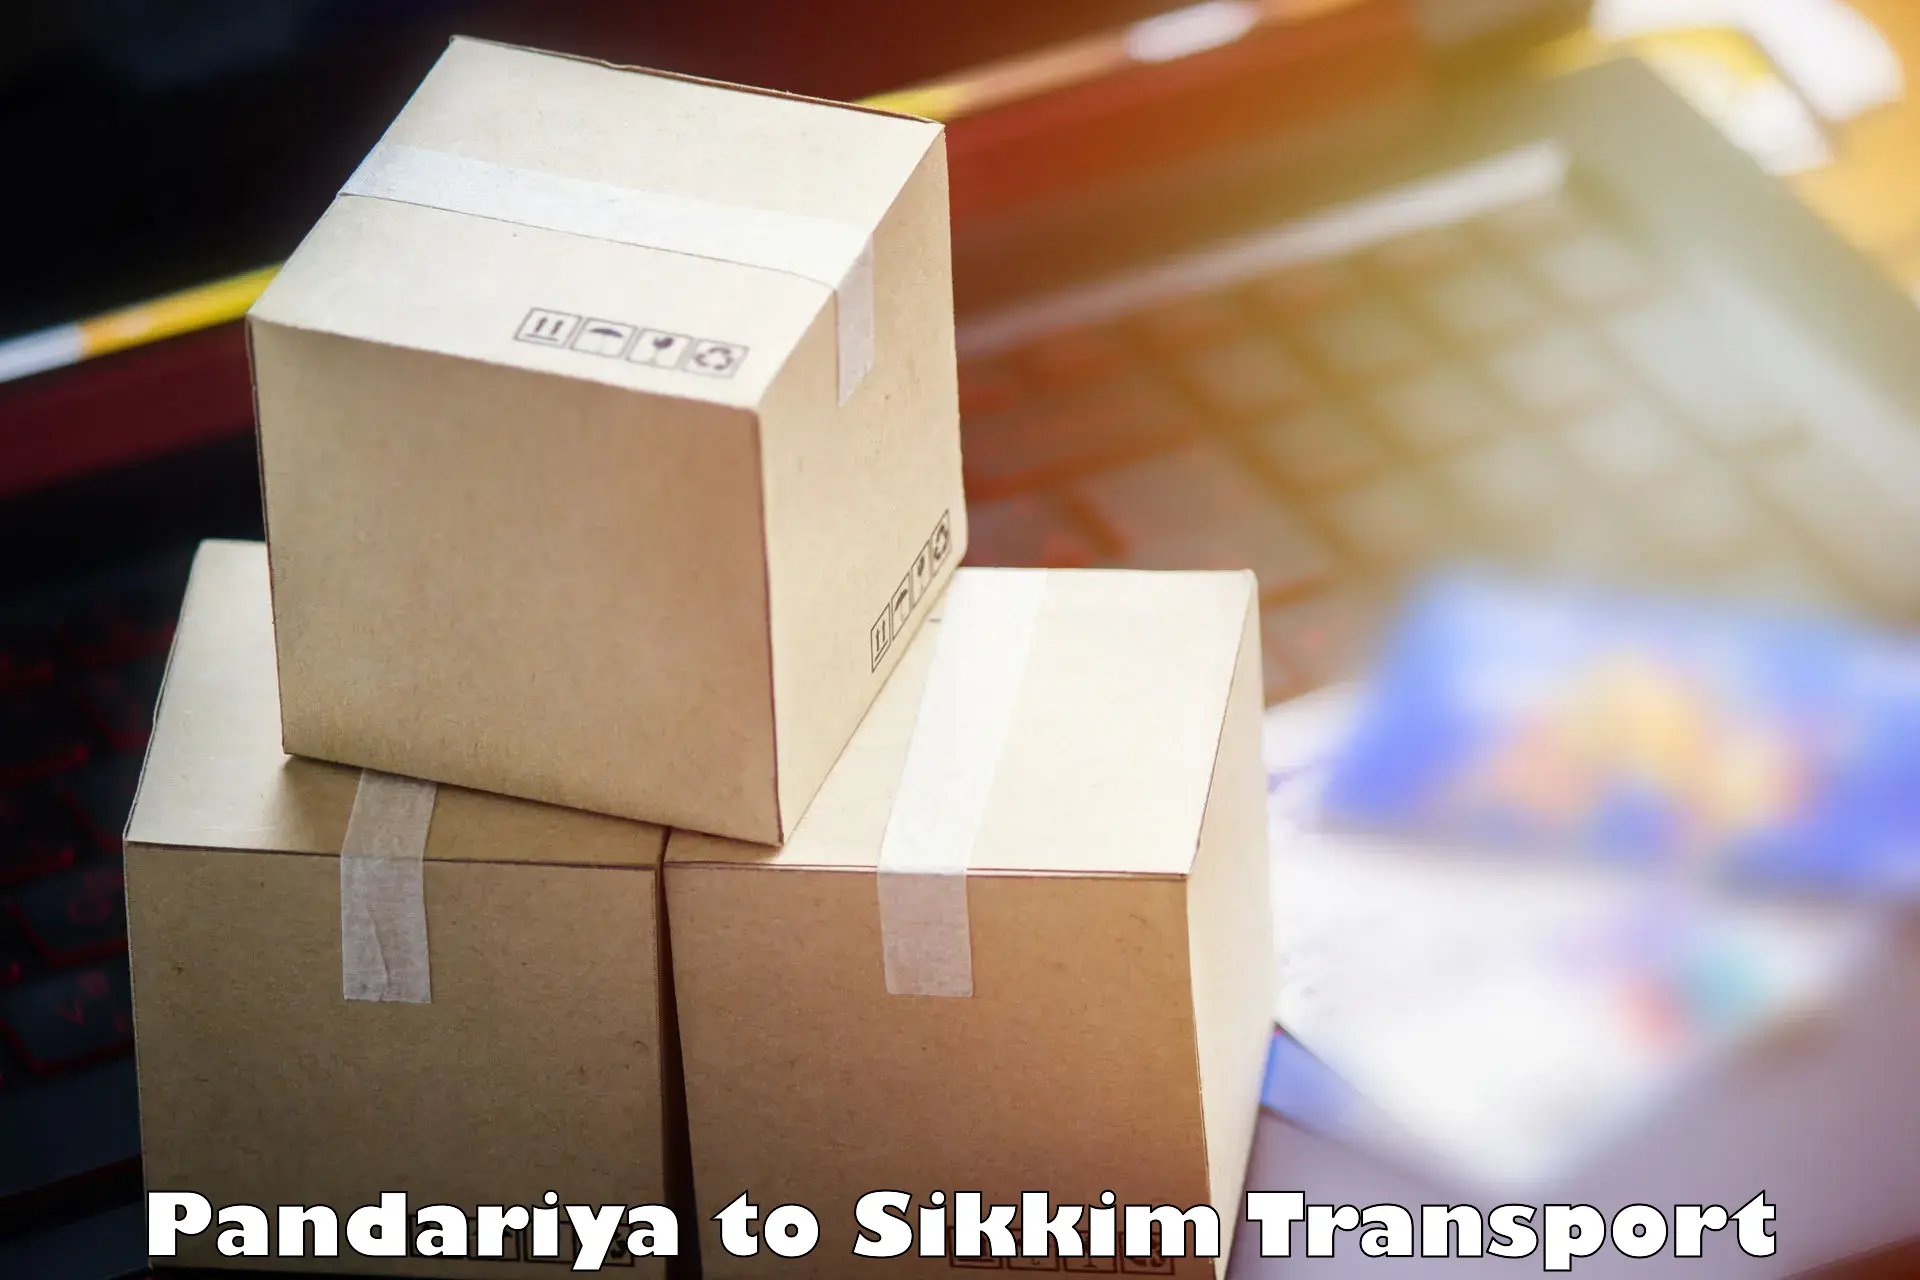 Furniture transport service Pandariya to Sikkim